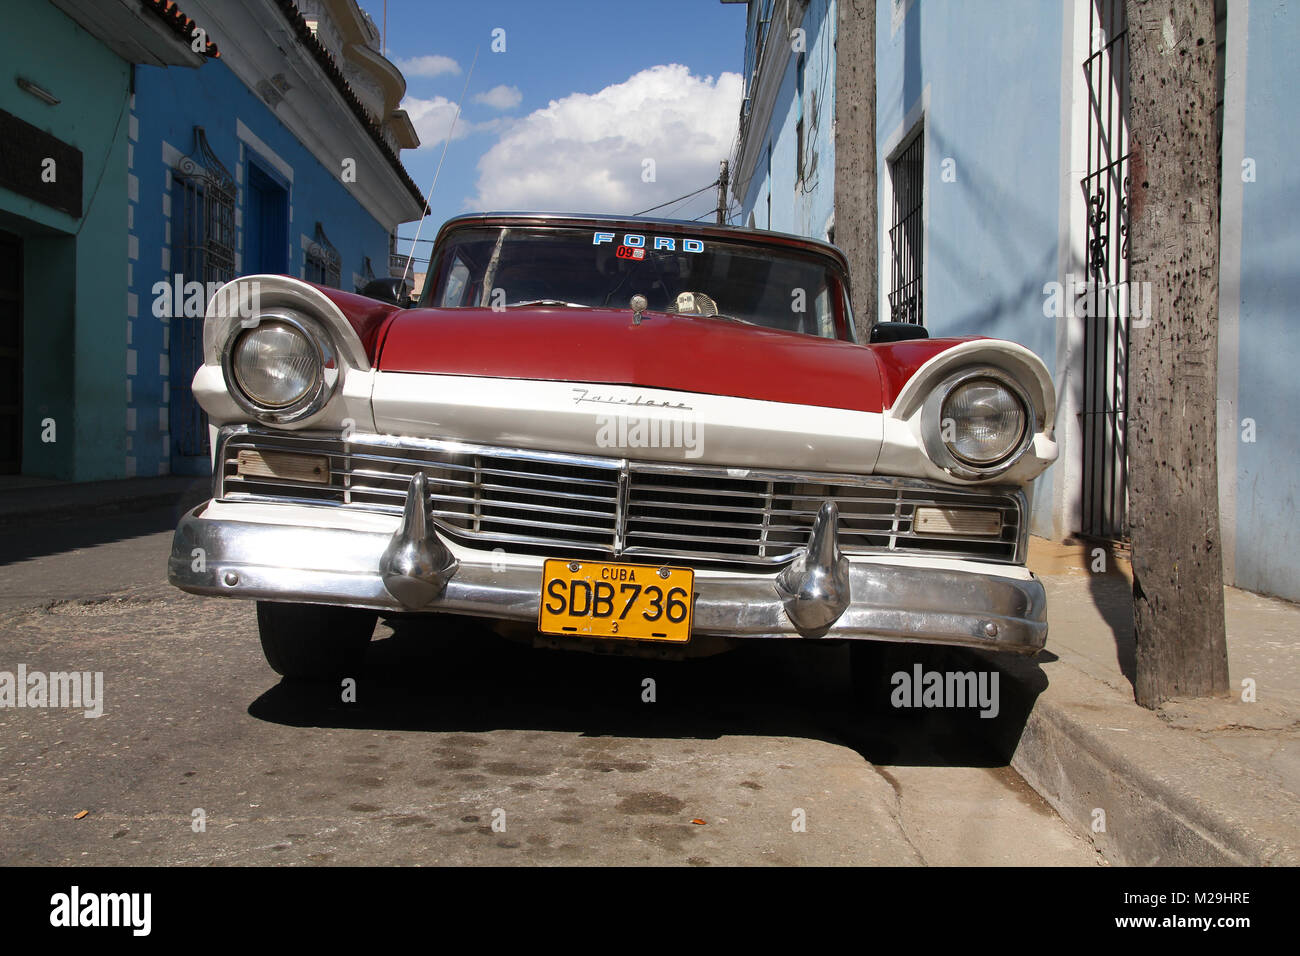 SANCTI Spíritus, Cuba - 6 de febrero: Clásicos coches americanos en la calle el 6 de febrero de 2011 en Sancti Spíritus, Cuba. La multitud de oldtimer coches en Foto de stock